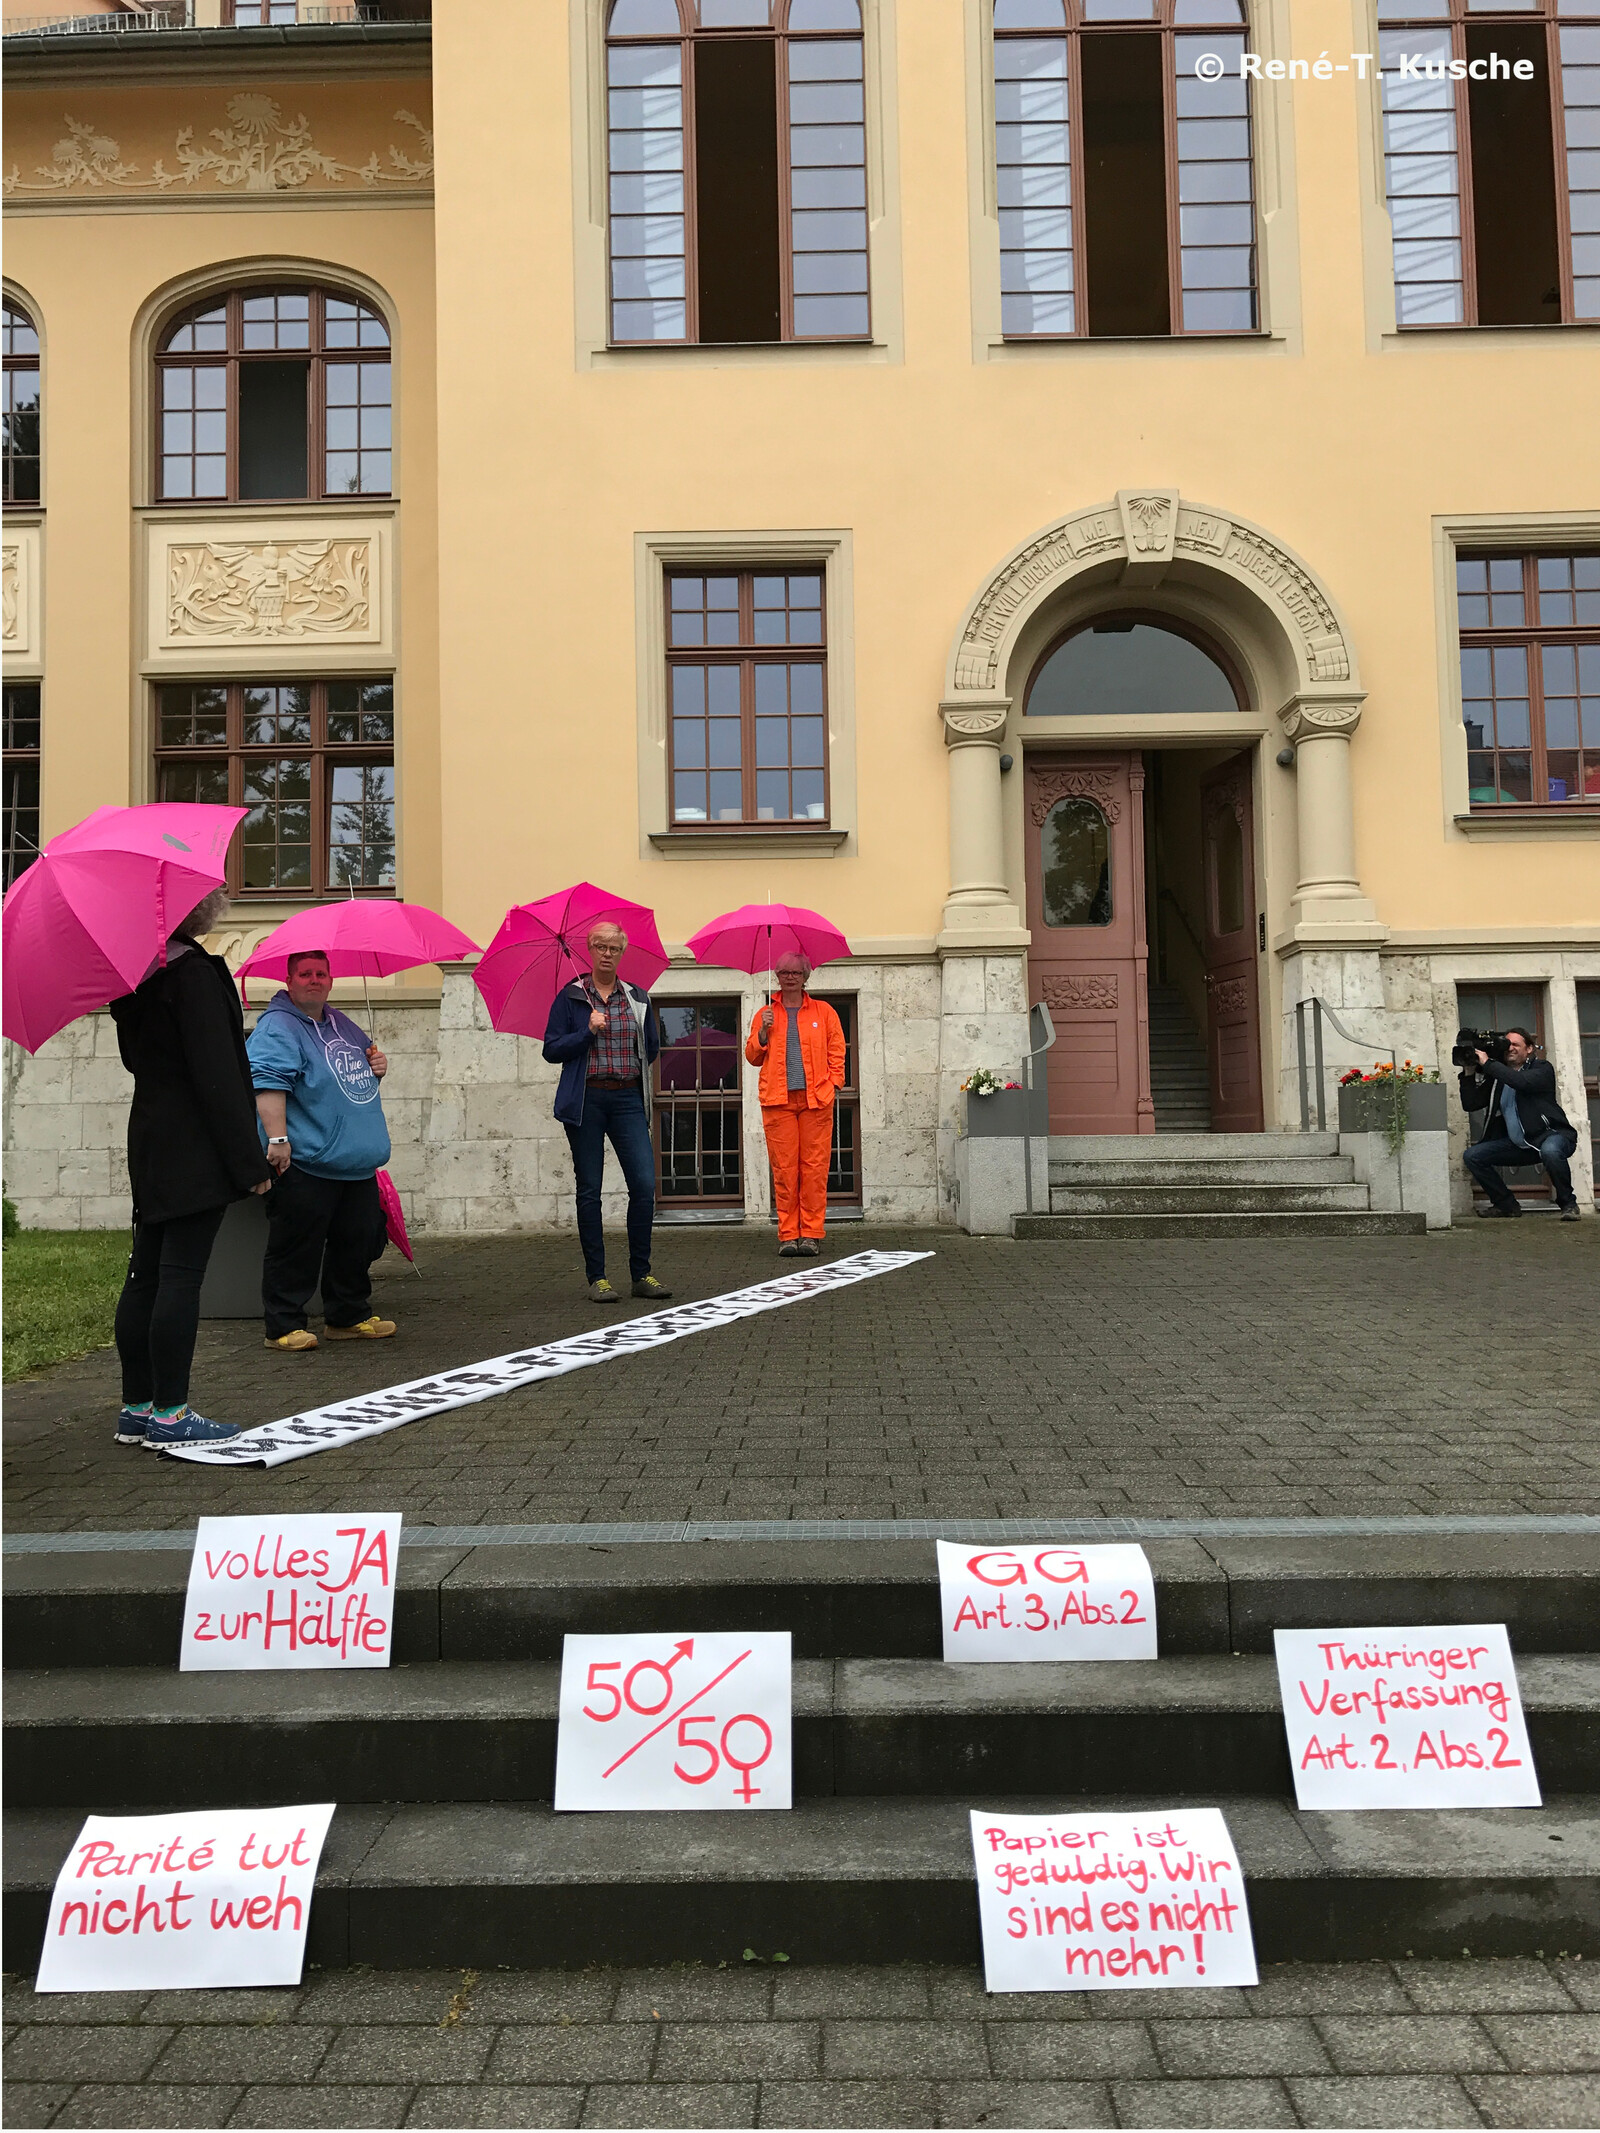 Frauen in die Politik: Aktion vor dem Landesverfassungsgericht in Weimar, René T. Kusche